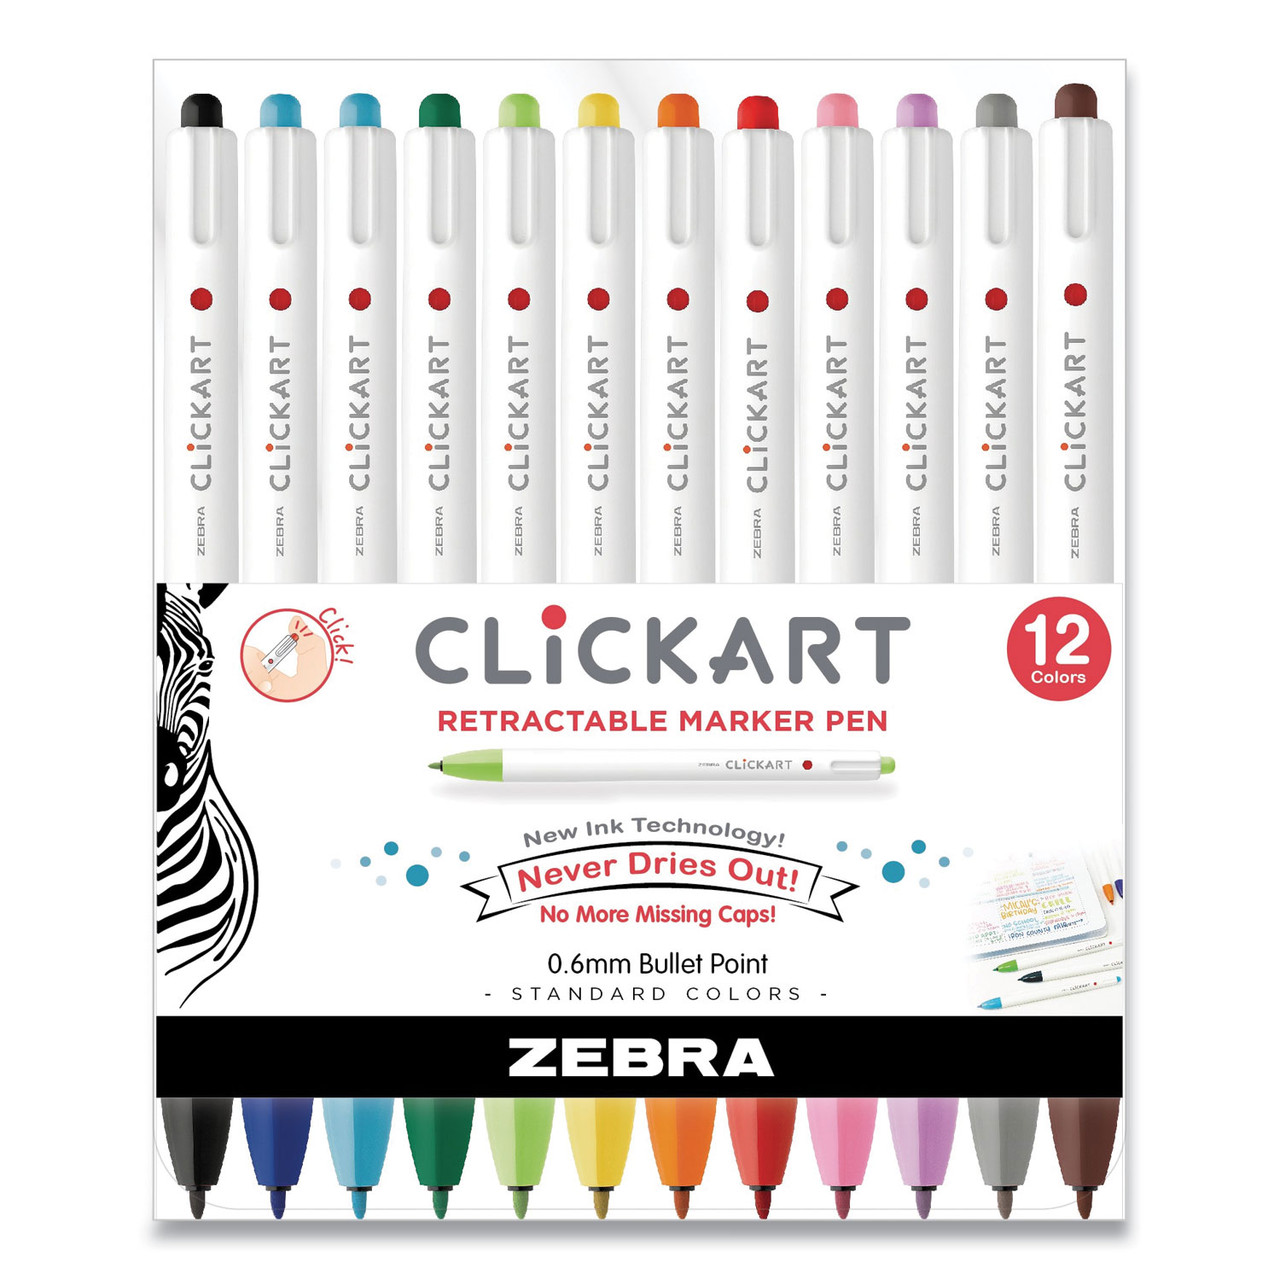 Pentel Arts Color Pen Fine Point Color Markers 36 Pkg Assorted Colors